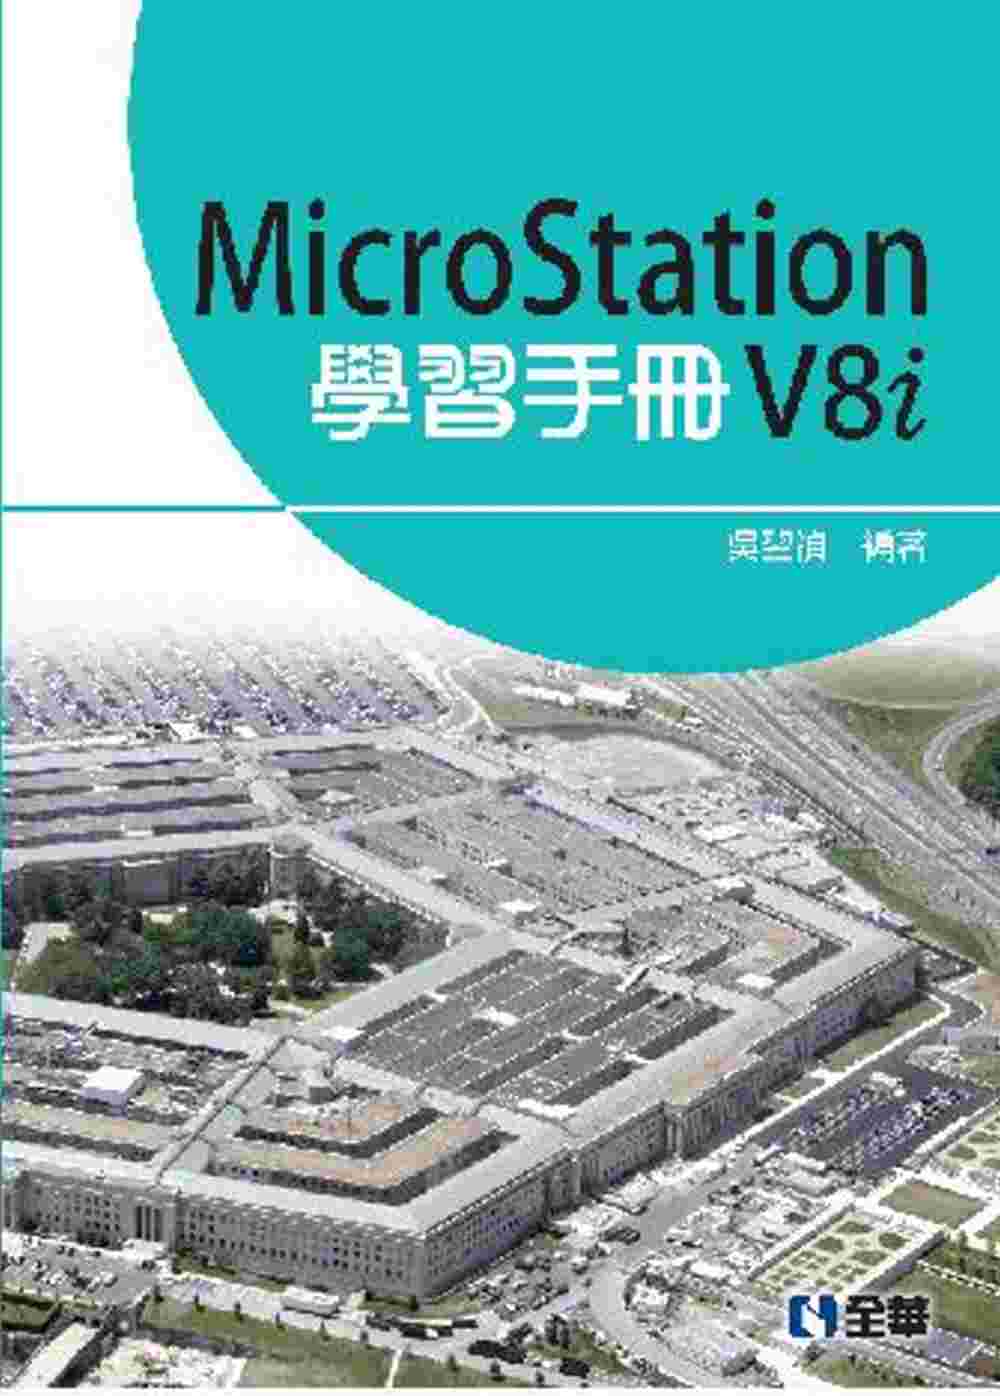 MicroStation V8i 學習手冊